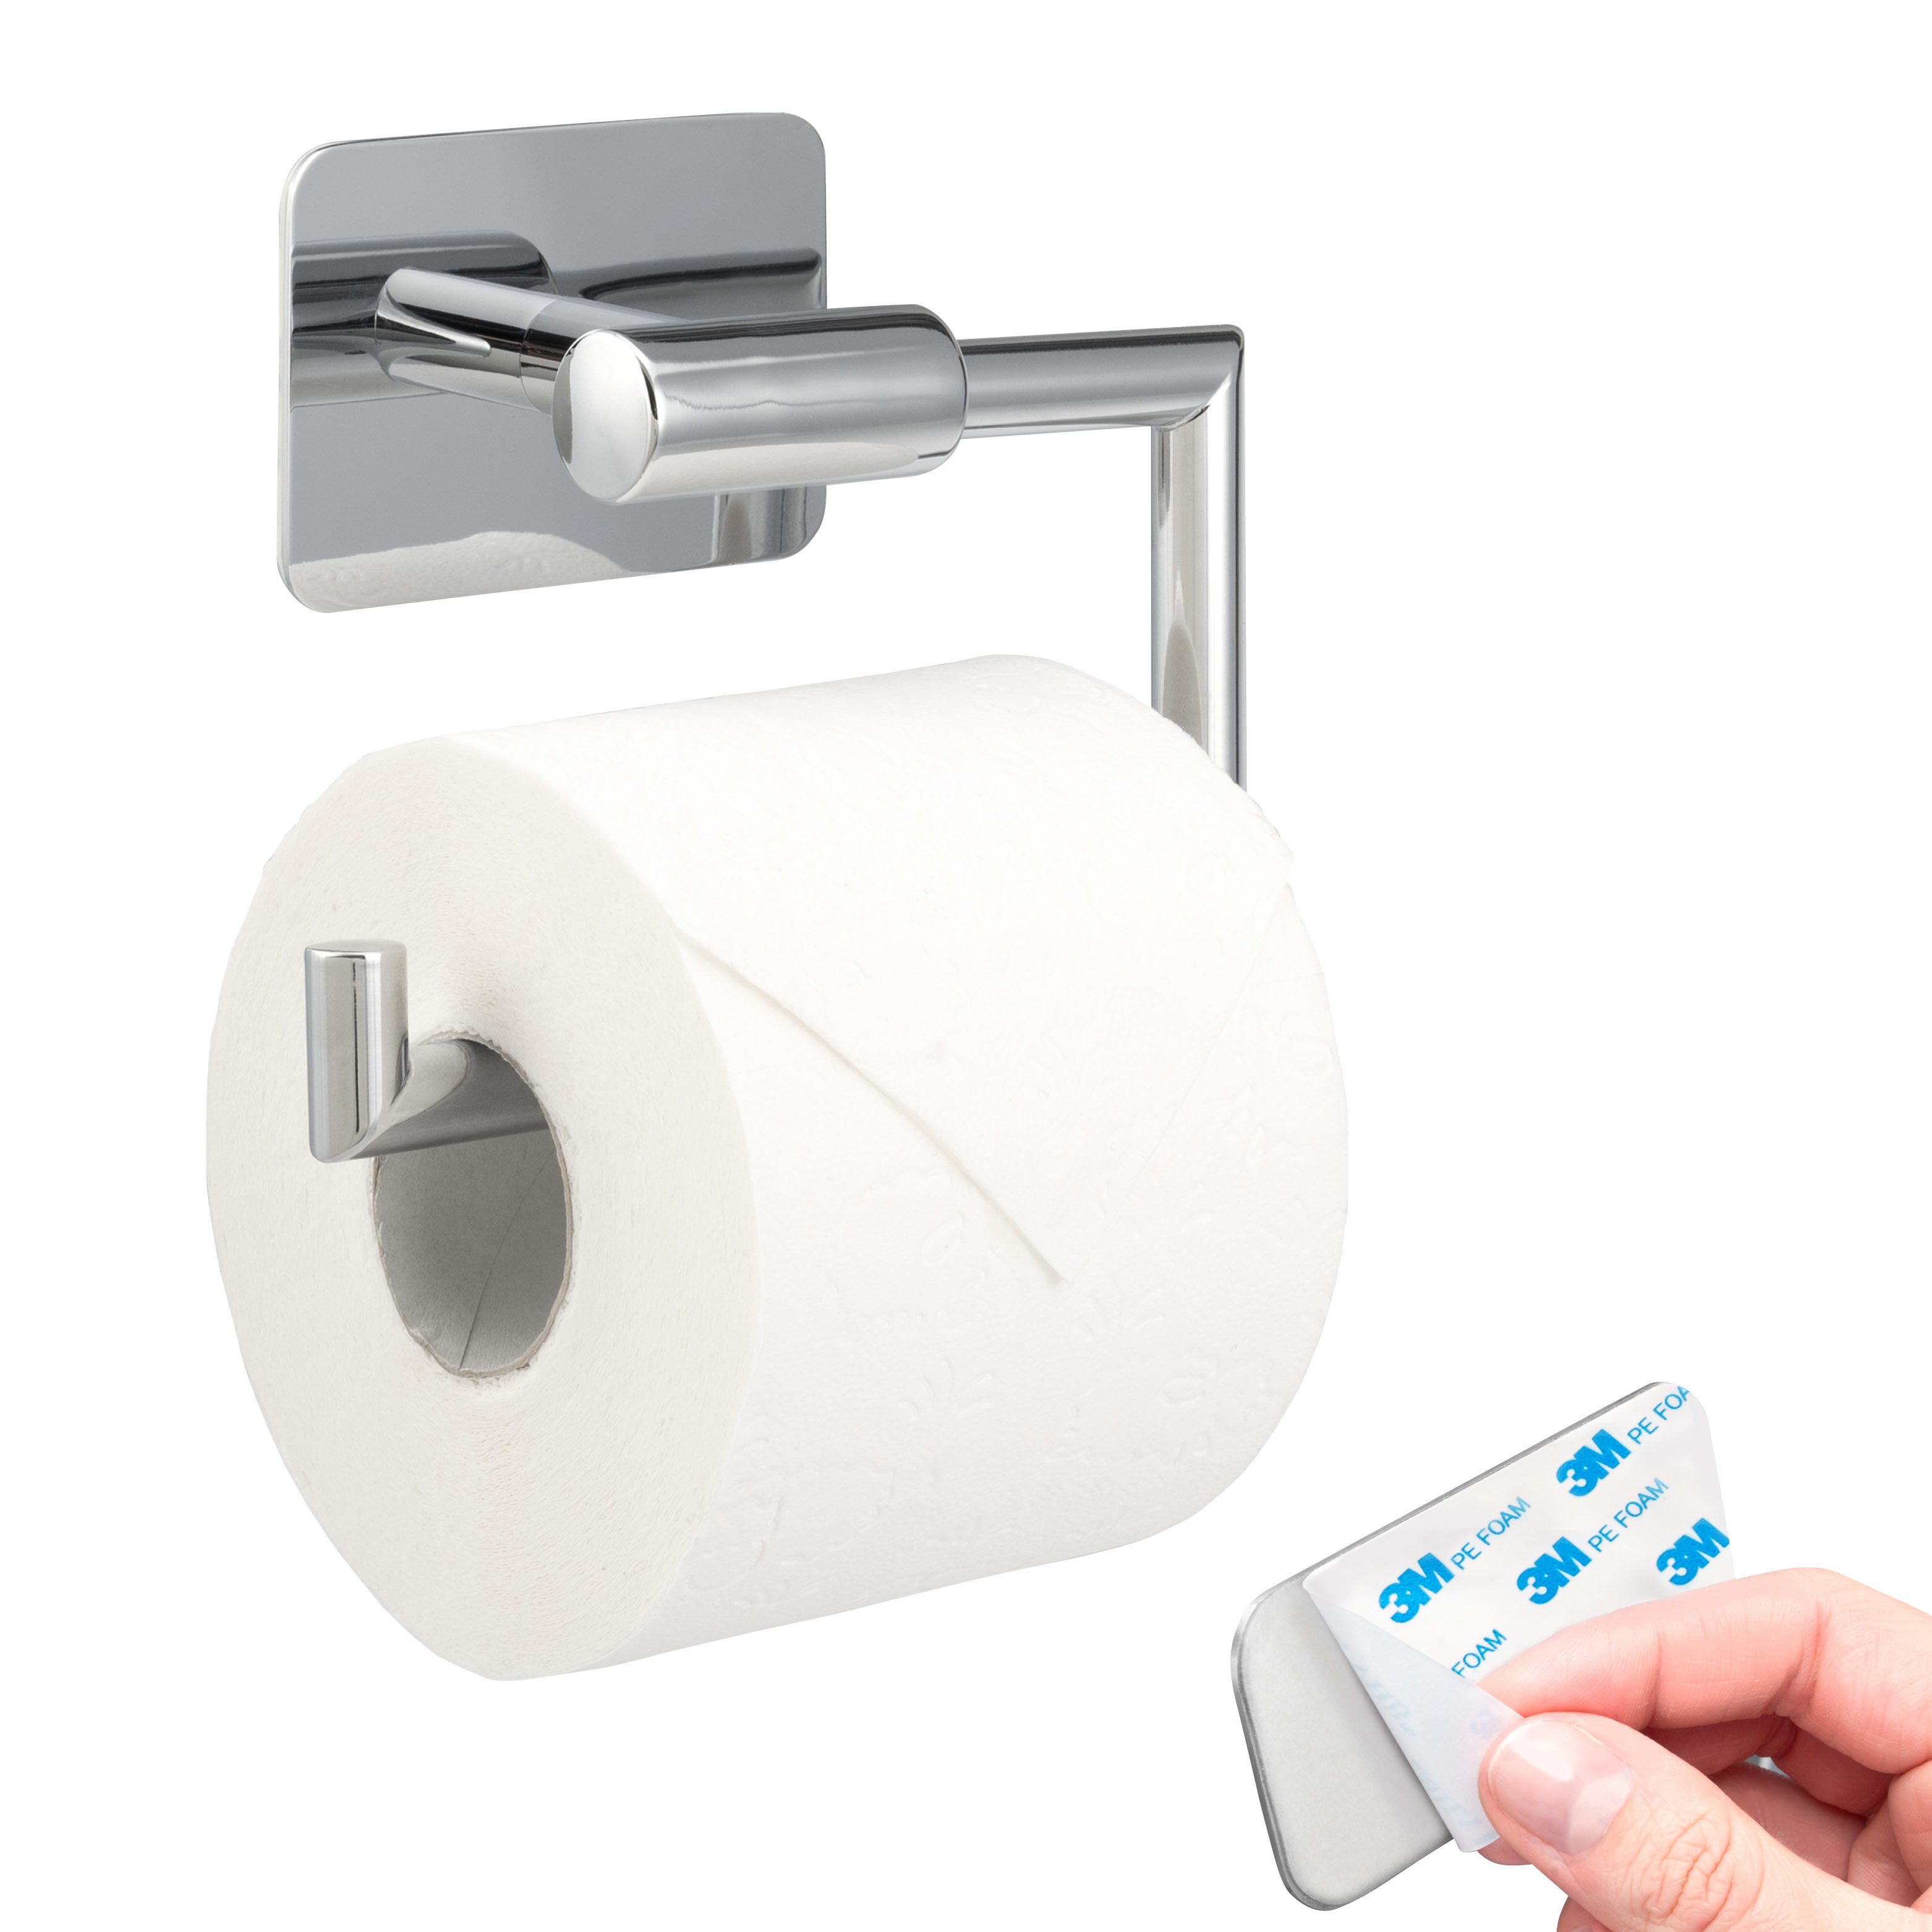 Bad-Serie LUCENTE TAPE - Toilettenpapierhalter, Papierrollenhalter selbstklebend Edelstahl, verchromt - kein Bohren 3M Klebebefestigung